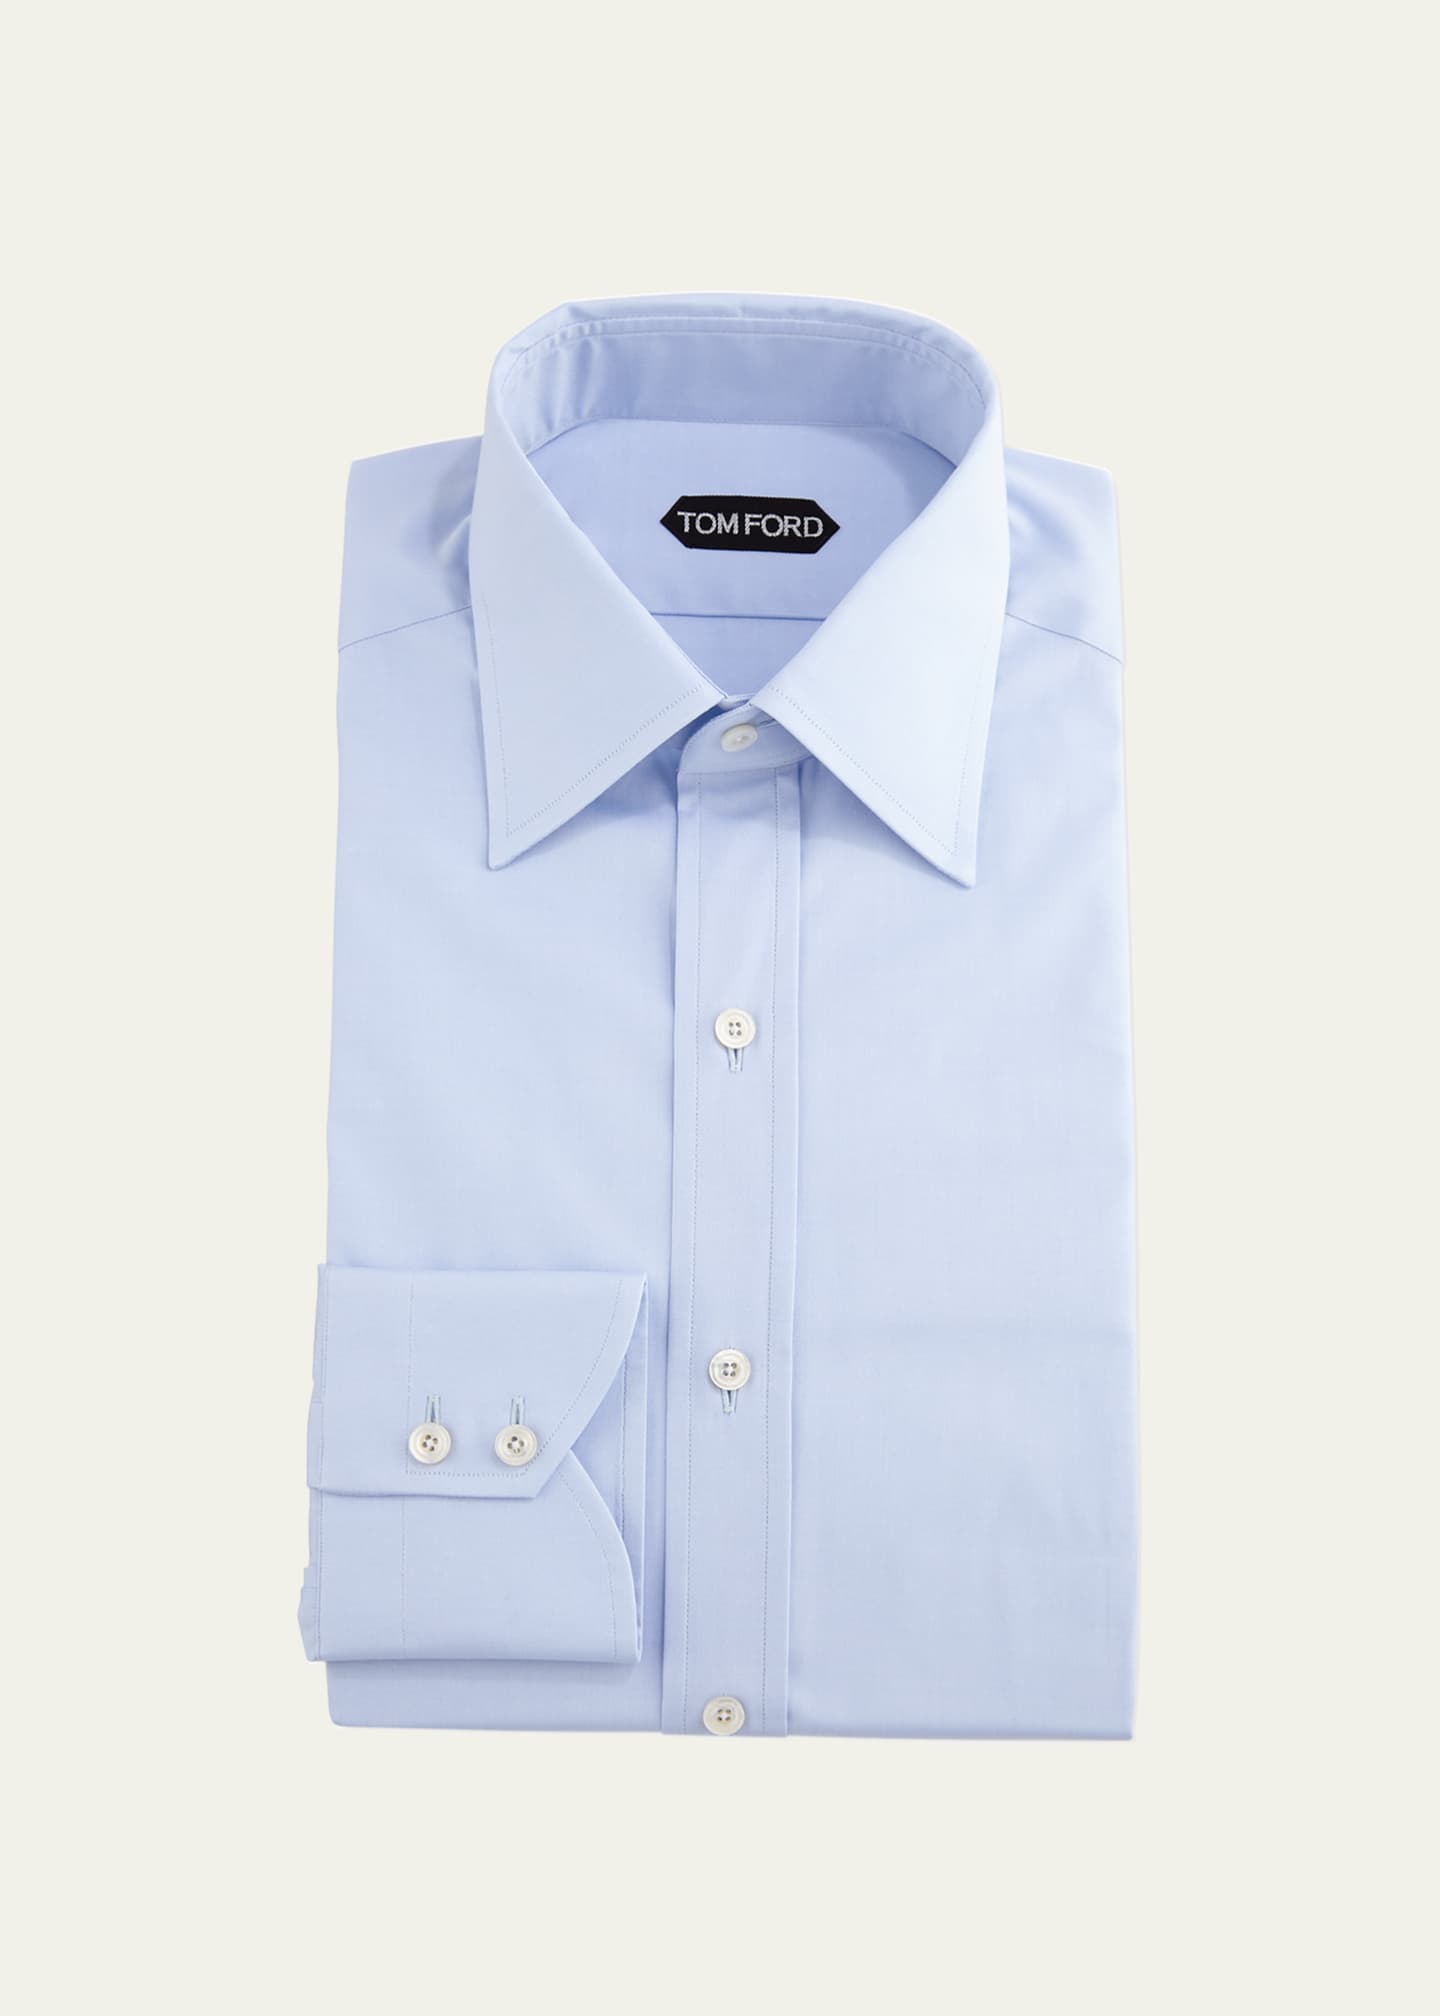 TOM FORD Men's Slim-Fit Solid Poplin Dress Shirt - Bergdorf Goodman